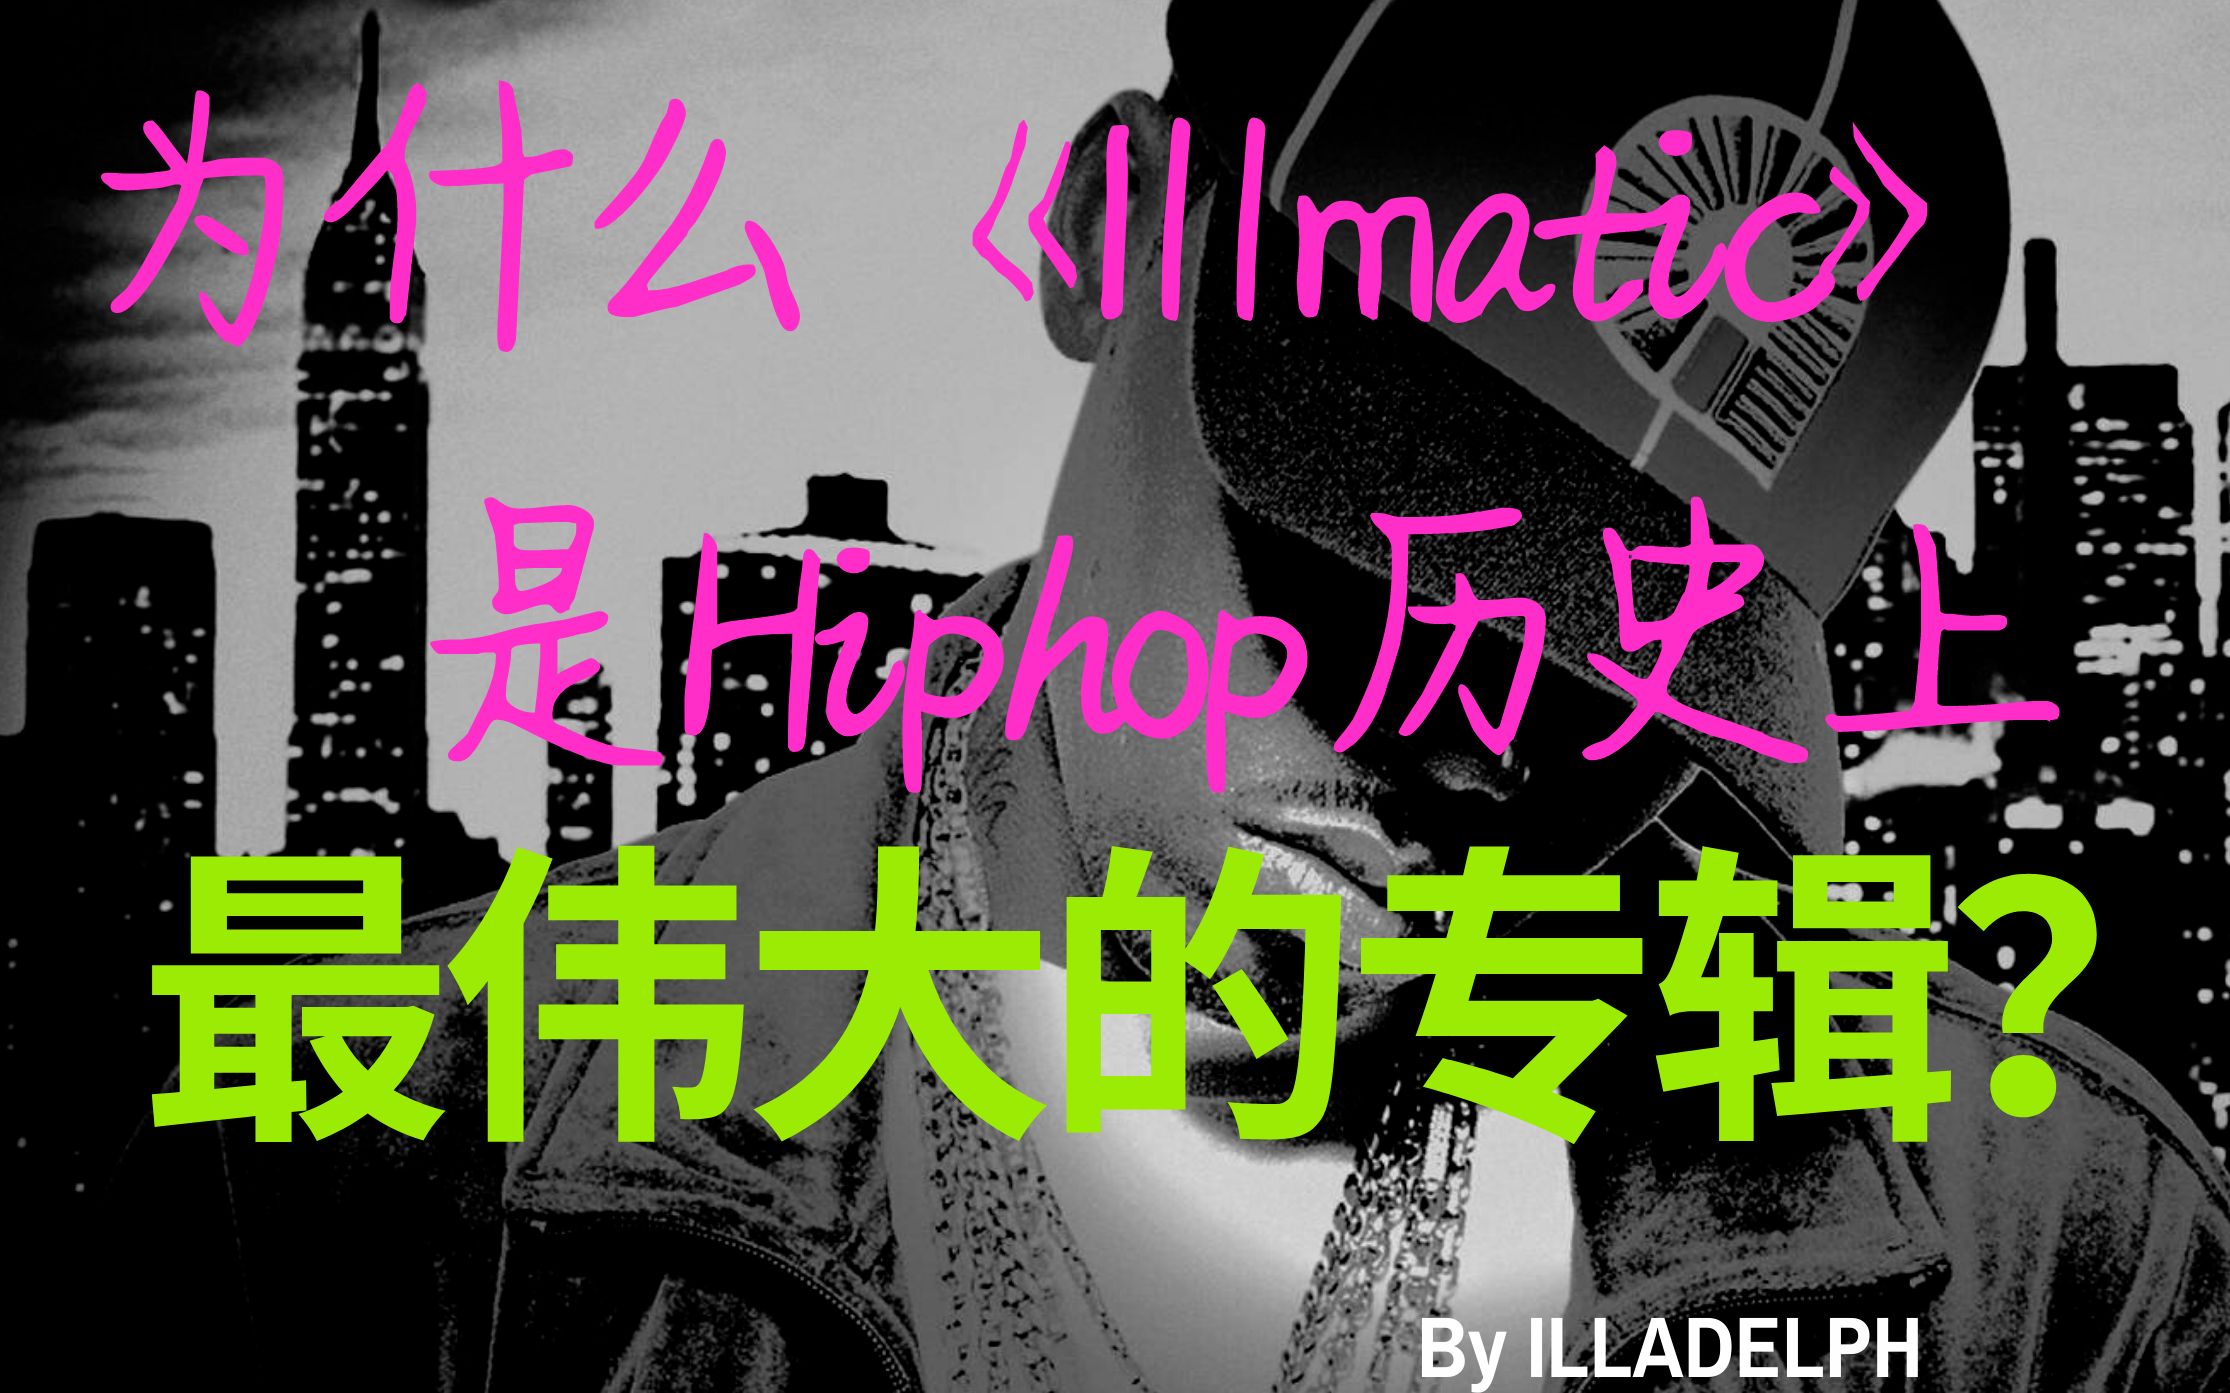 为什么Nas第一张专辑《illmatic》被称为hiphop历史上最伟大的专辑？